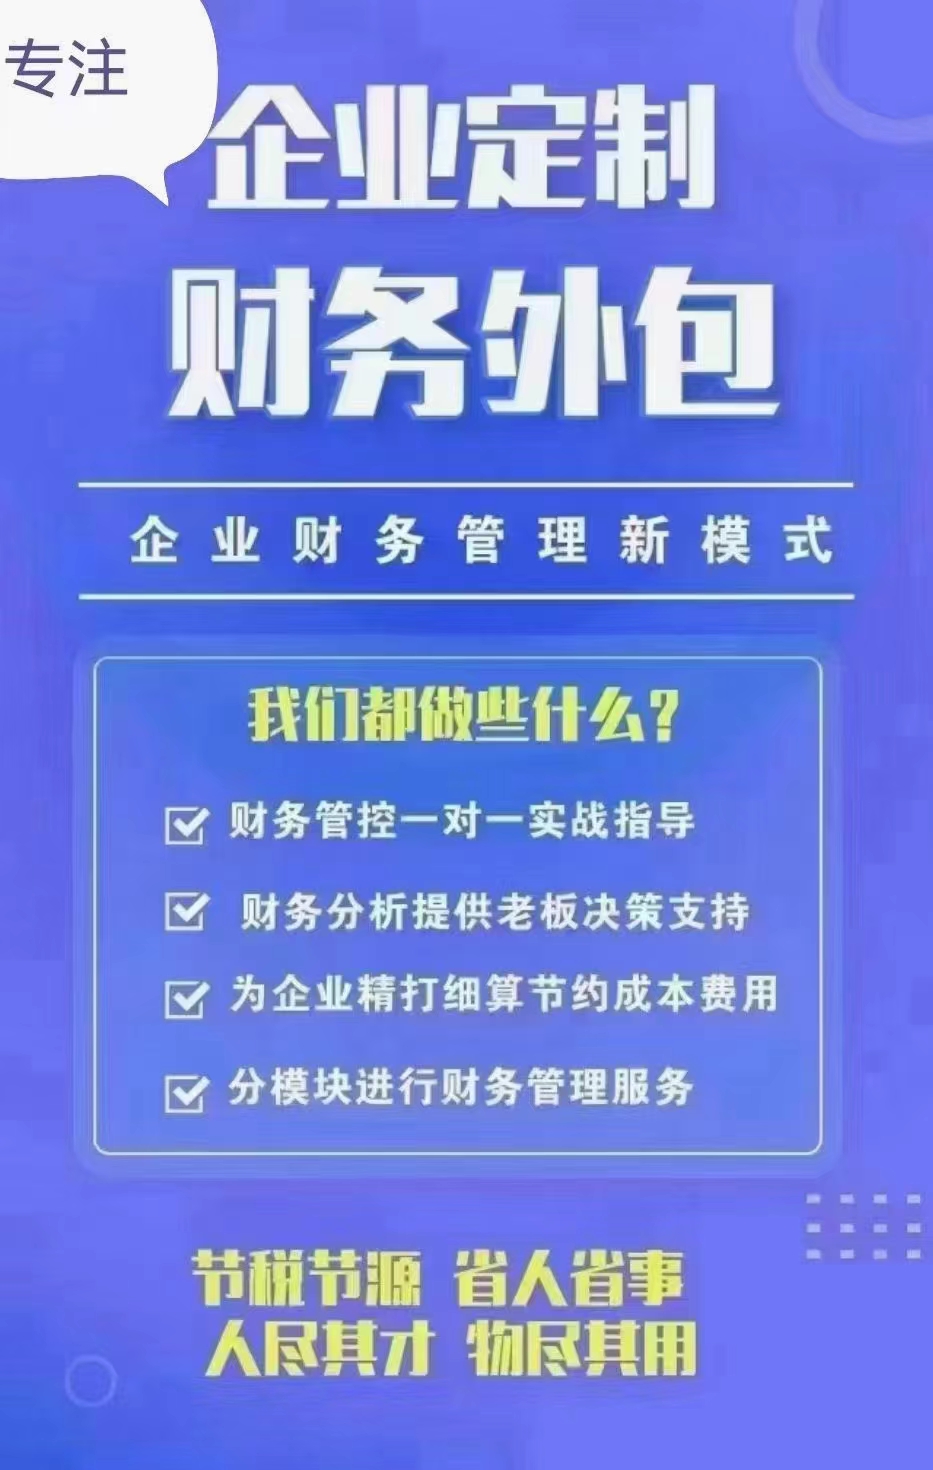 河南郑州开封建筑工程项目财务外包内容及详情